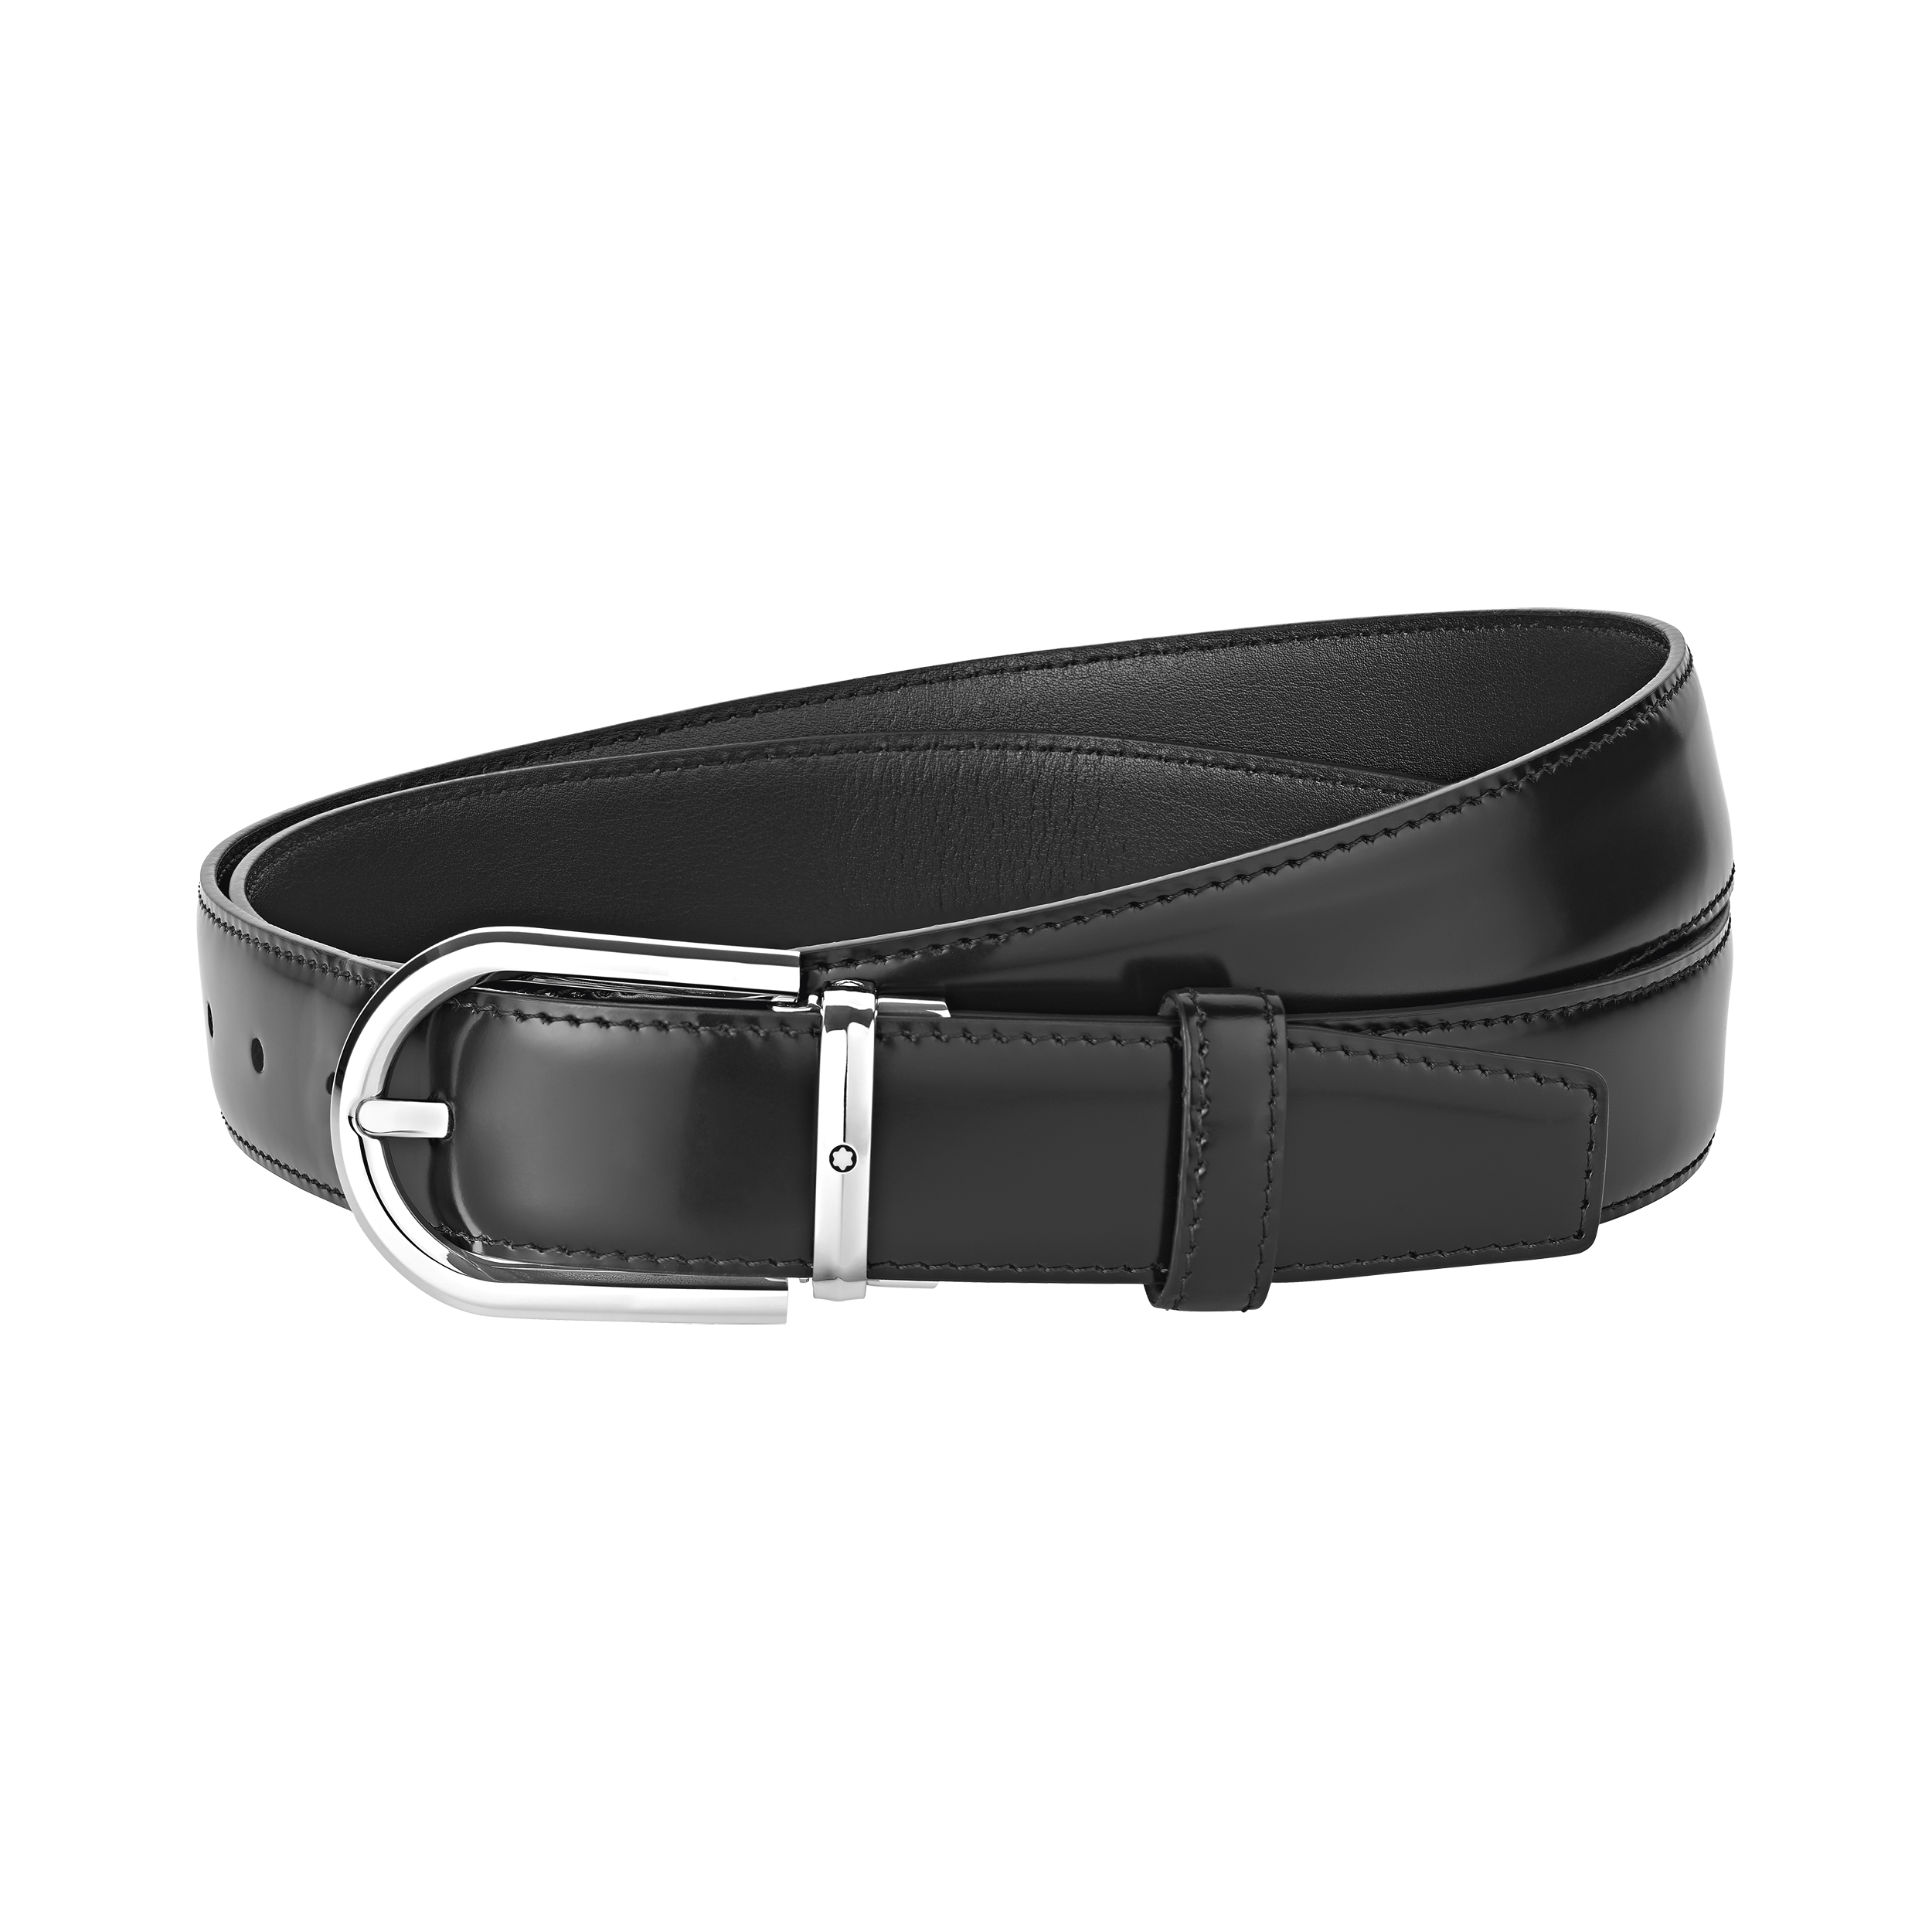 Horseshoe buckle black 30 mm leather belt, image 1